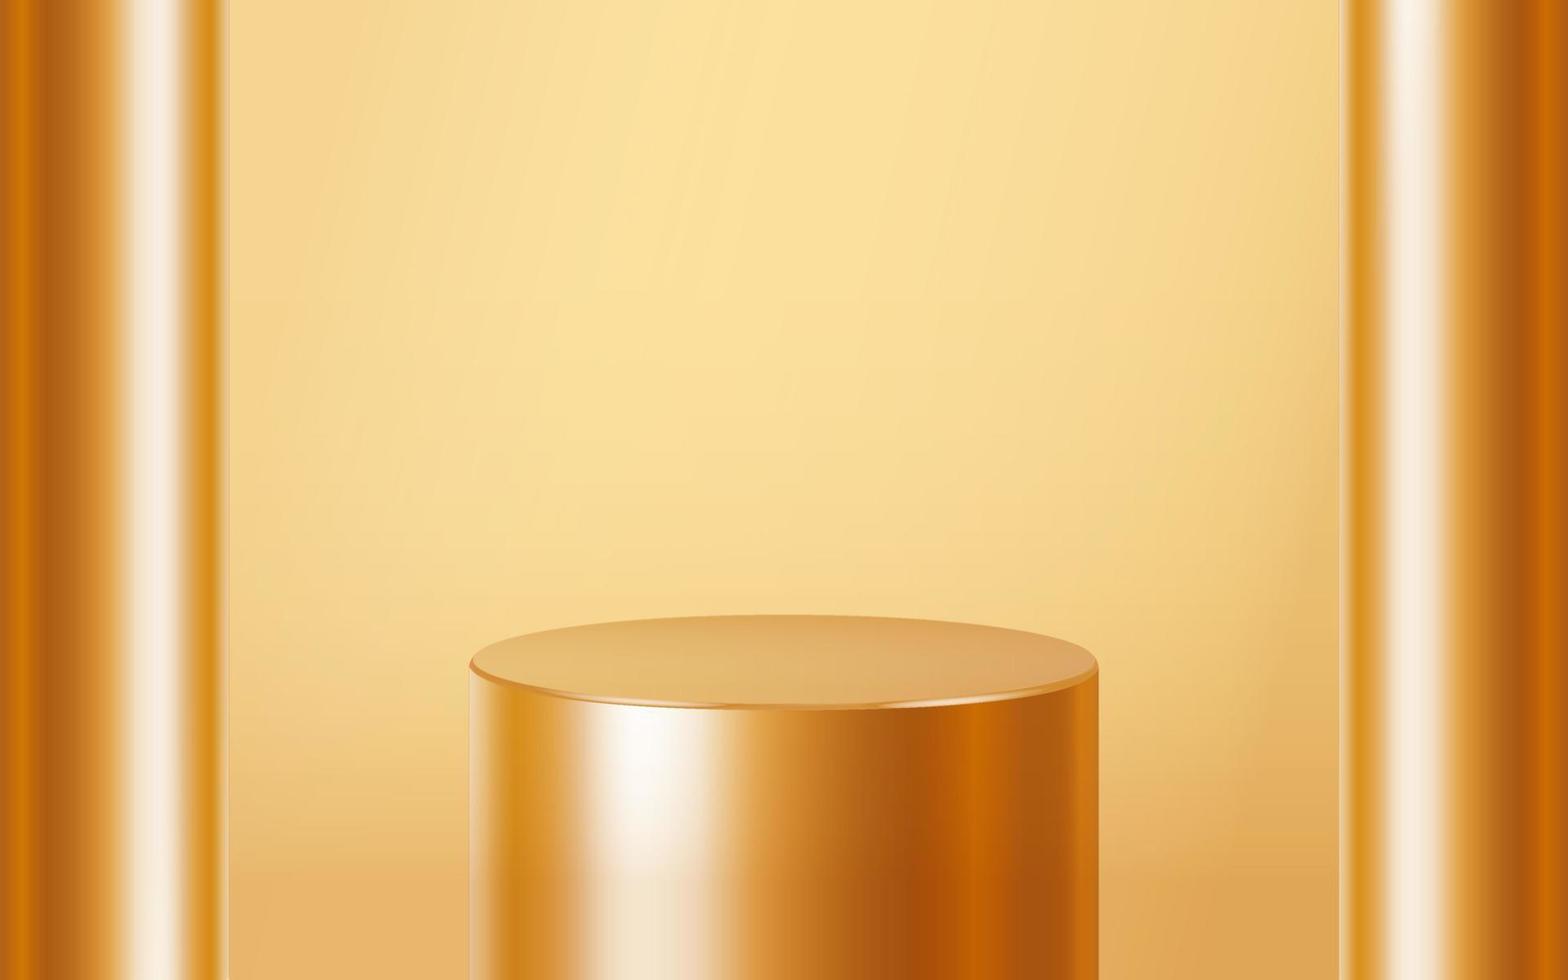 realista uma cena de pódio de etapa de produto em branco dourado isolada em fundo dourado. forma redonda metálica geométrica para a marca do produto. cena de simulação de cilindro de ouro. fundo de ilustração vetorial 3D vetor